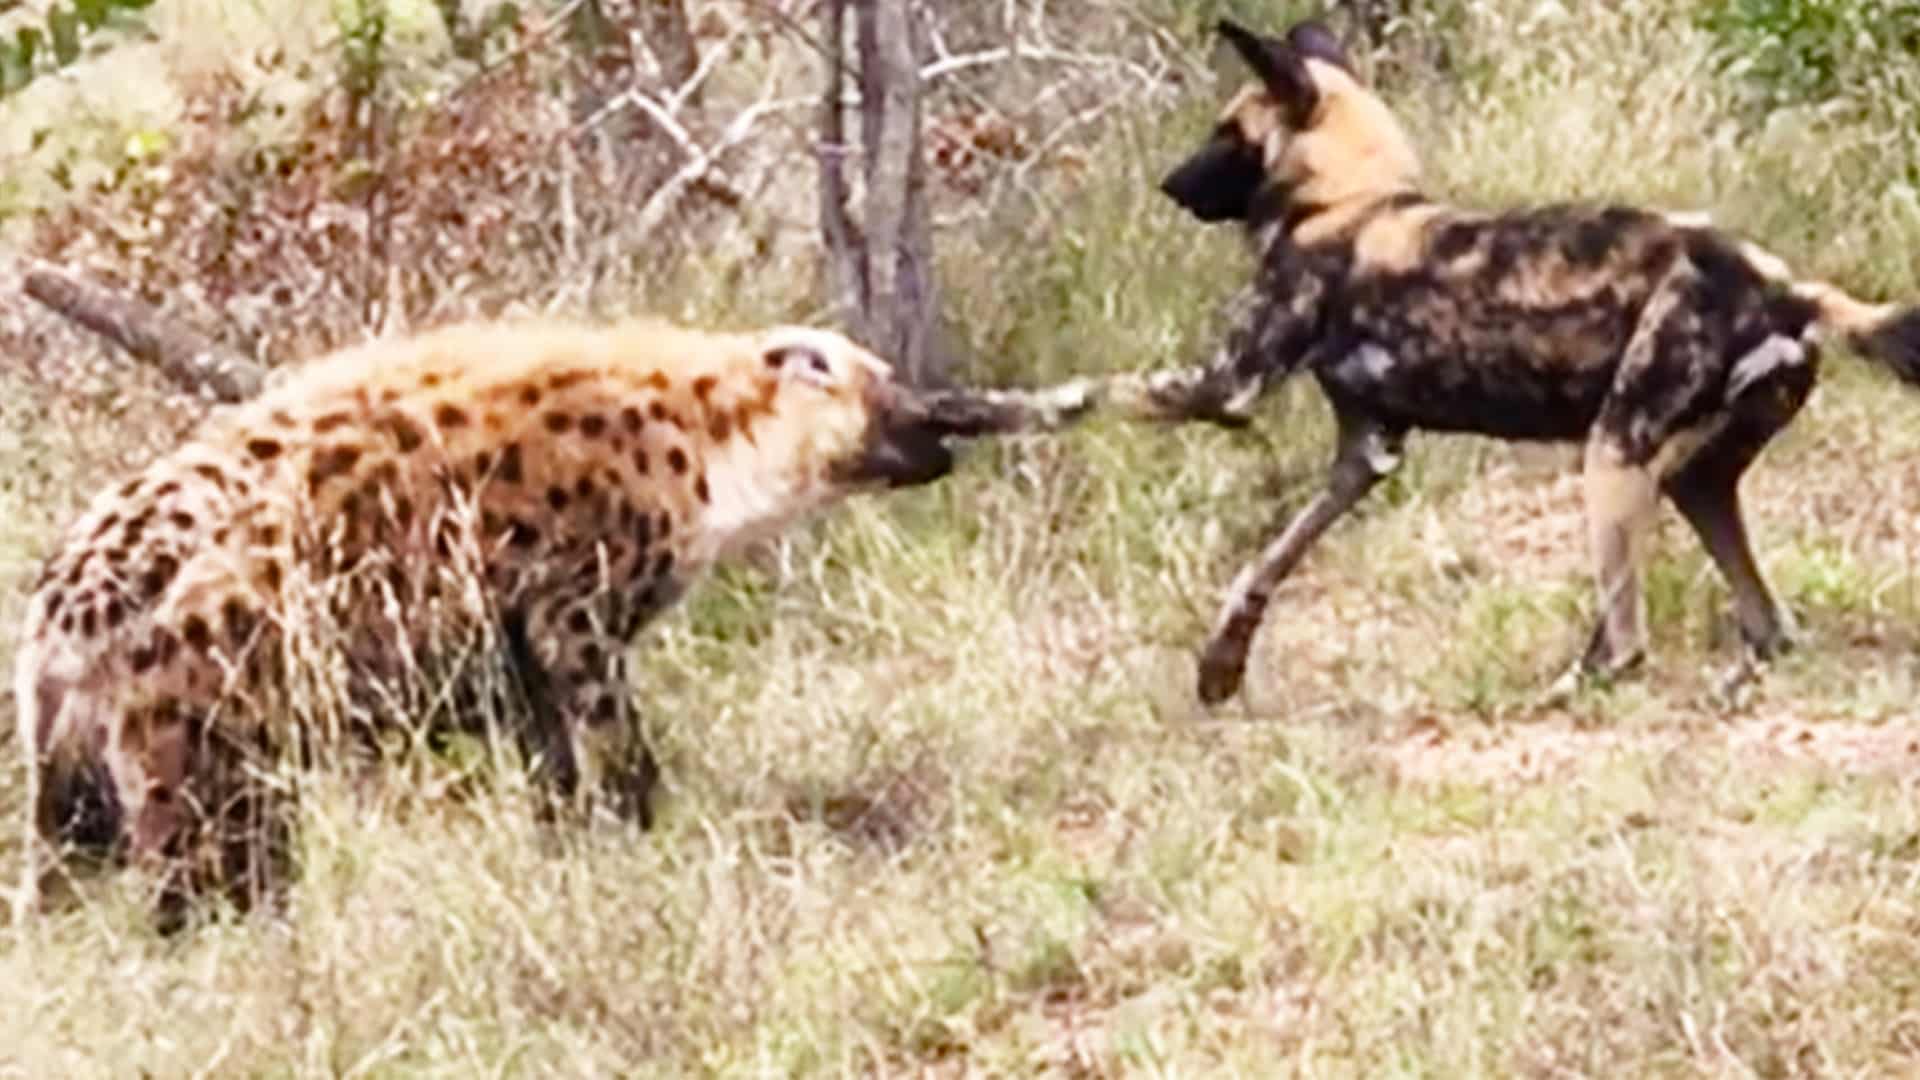 Wild Dog & Hyena Punching Match